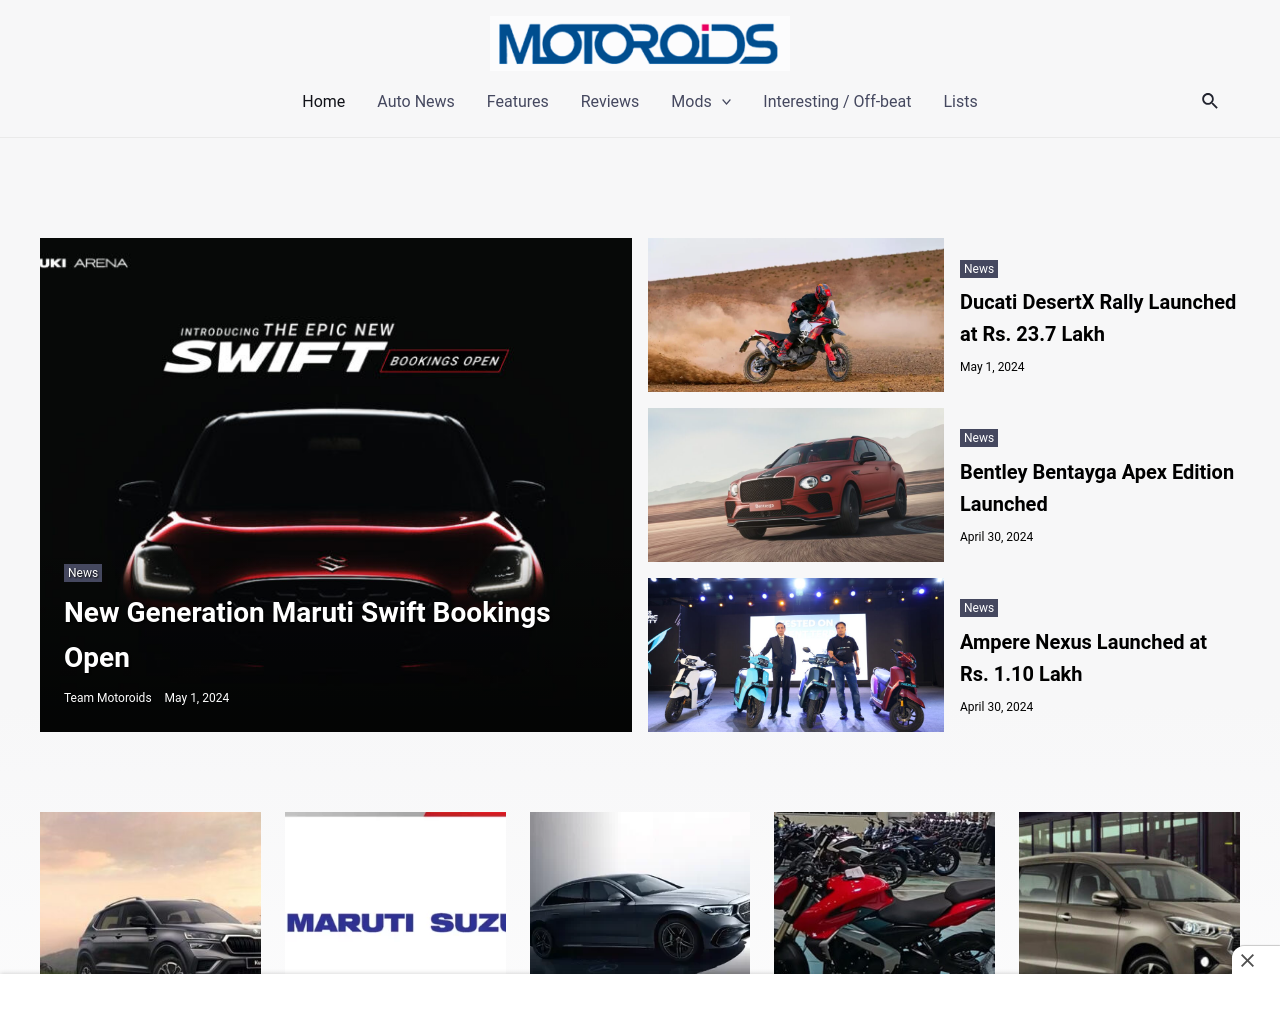 motoroids.com